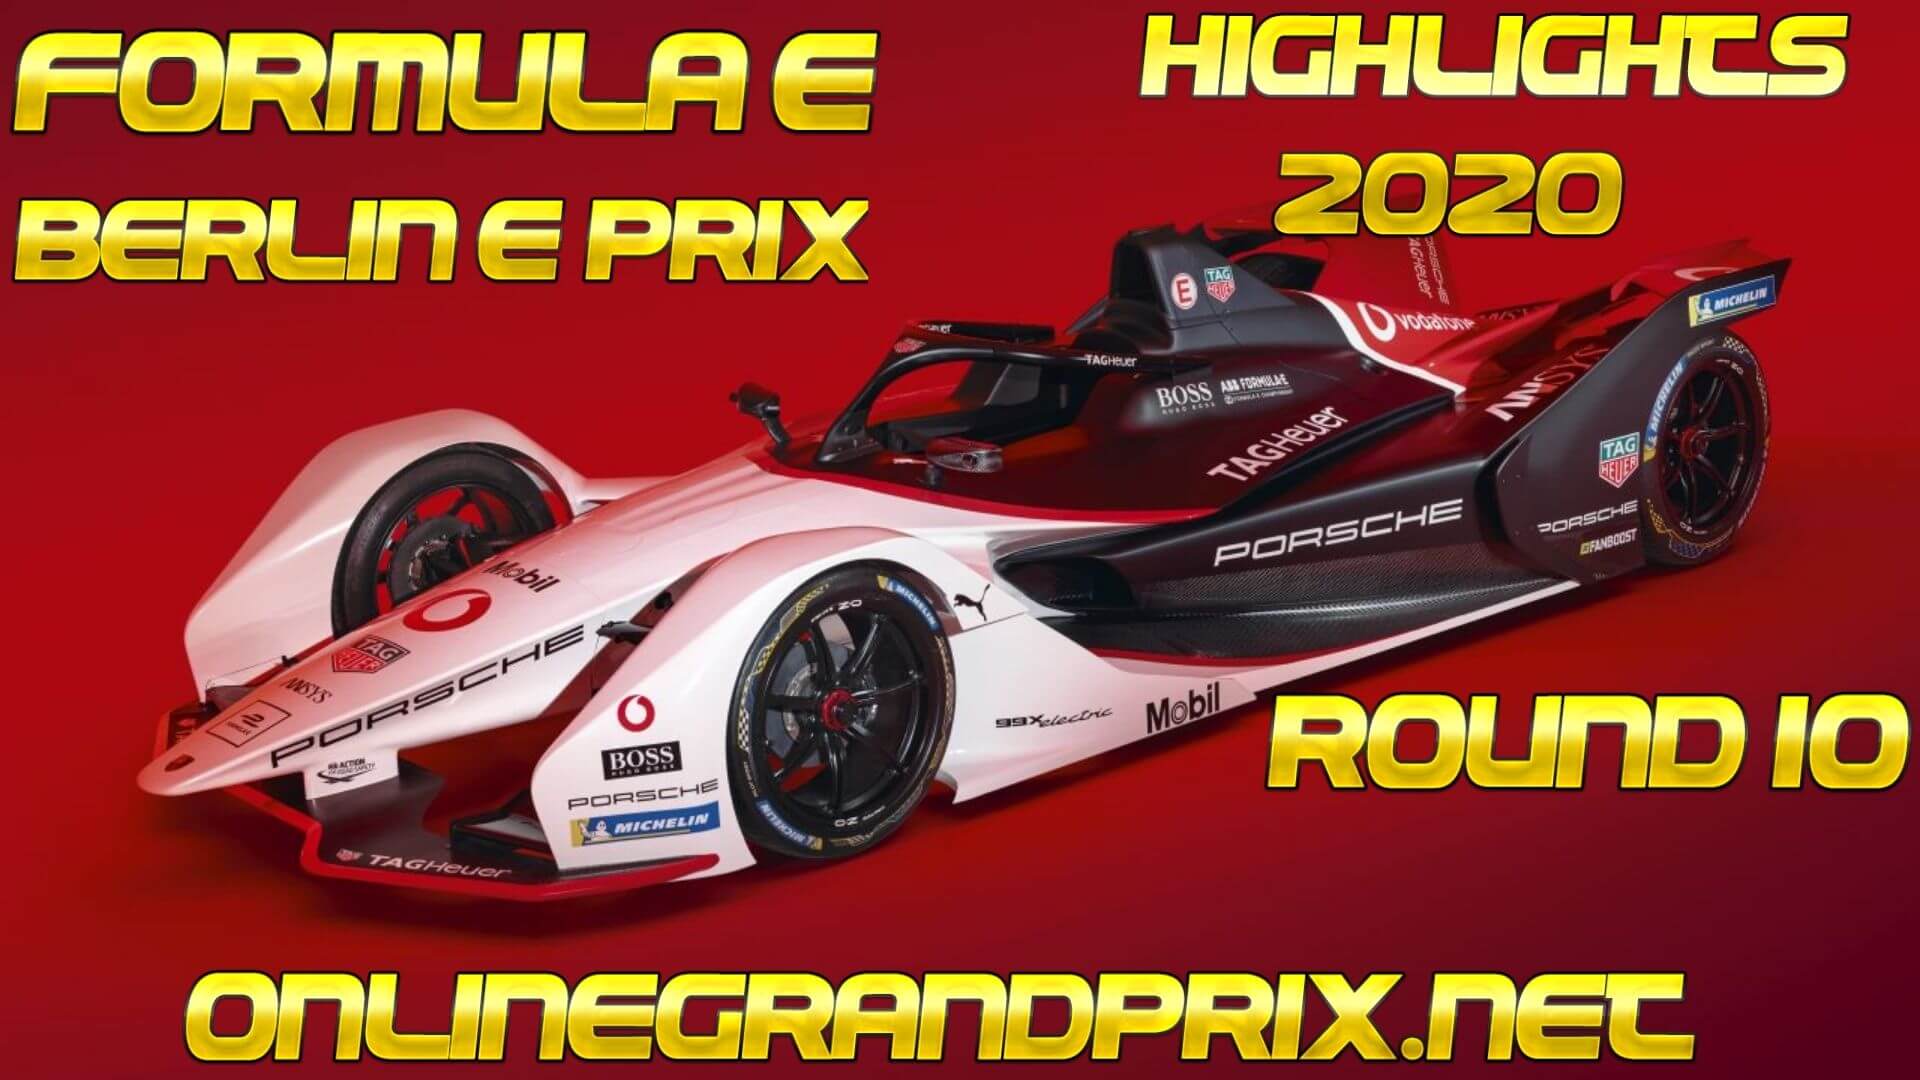 Berlin E Prix Formula E Highlights 2020 Round 10